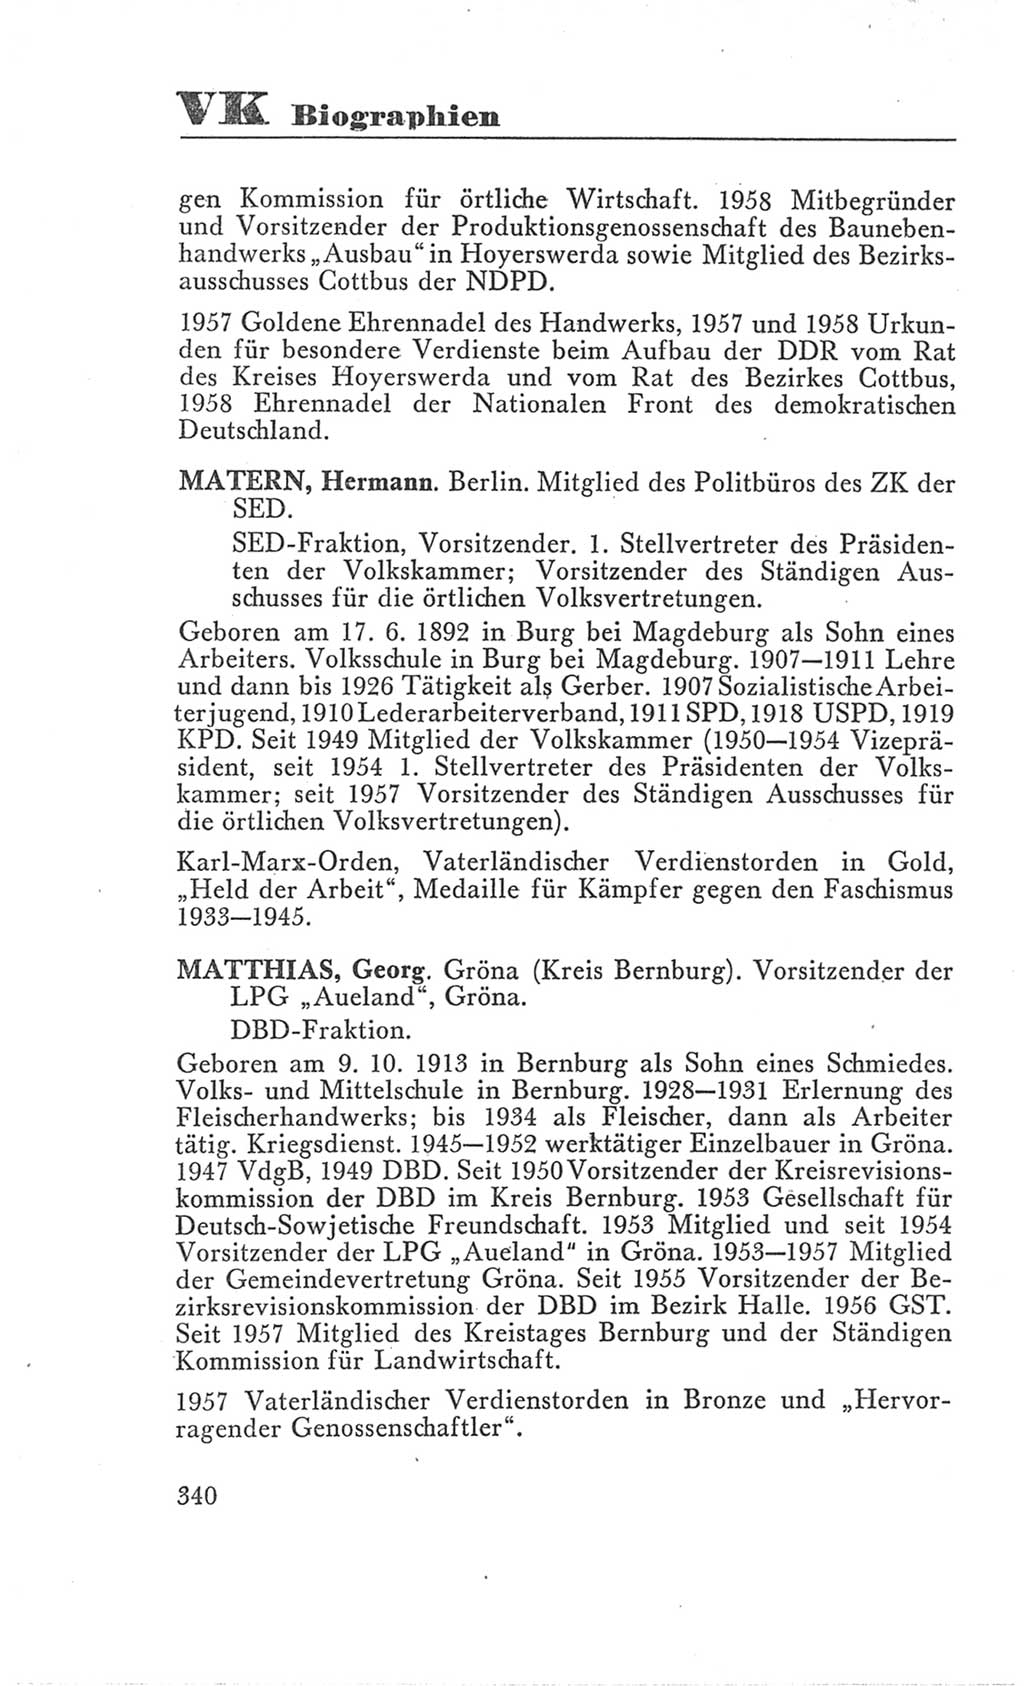 Handbuch der Volkskammer (VK) der Deutschen Demokratischen Republik (DDR), 3. Wahlperiode 1958-1963, Seite 340 (Hdb. VK. DDR 3. WP. 1958-1963, S. 340)